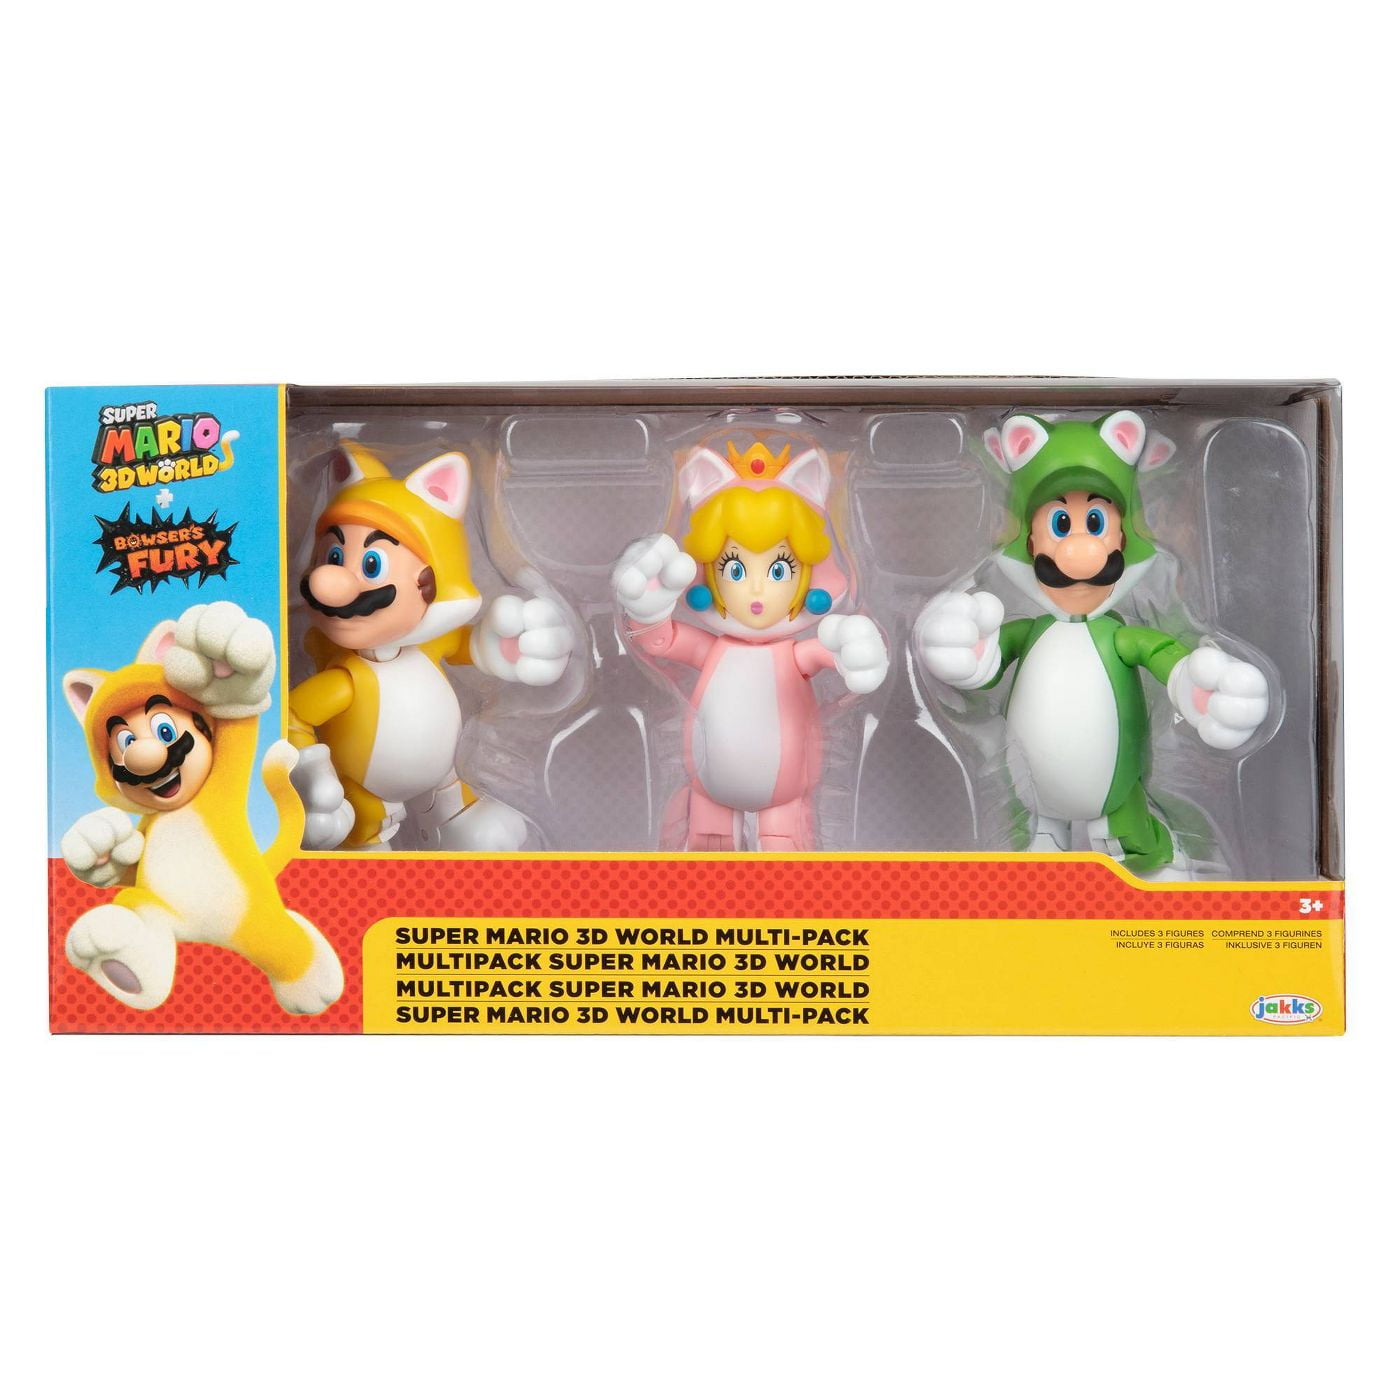 Super Mario 3D World Multi Pack Browsers Fury Toy Cat Mario Peach Luigi  Figure 